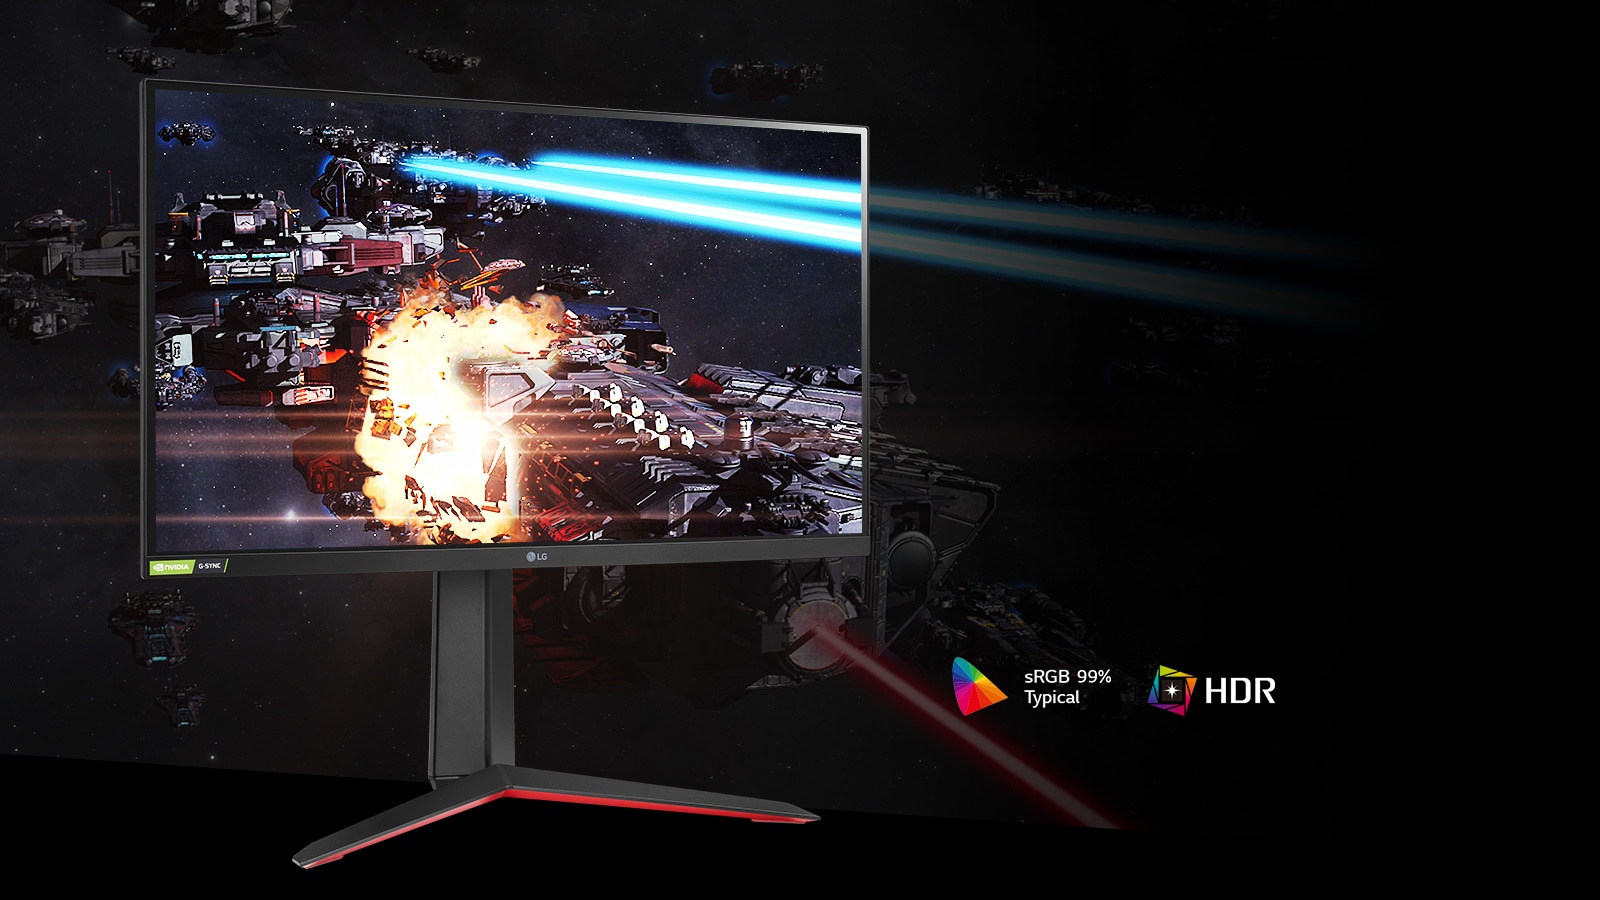 Cảnh chơi game với màu sắc và độ tương phản phong phú trên màn hình hỗ trợ HDR10 với sRGB 99% (Thông thường).